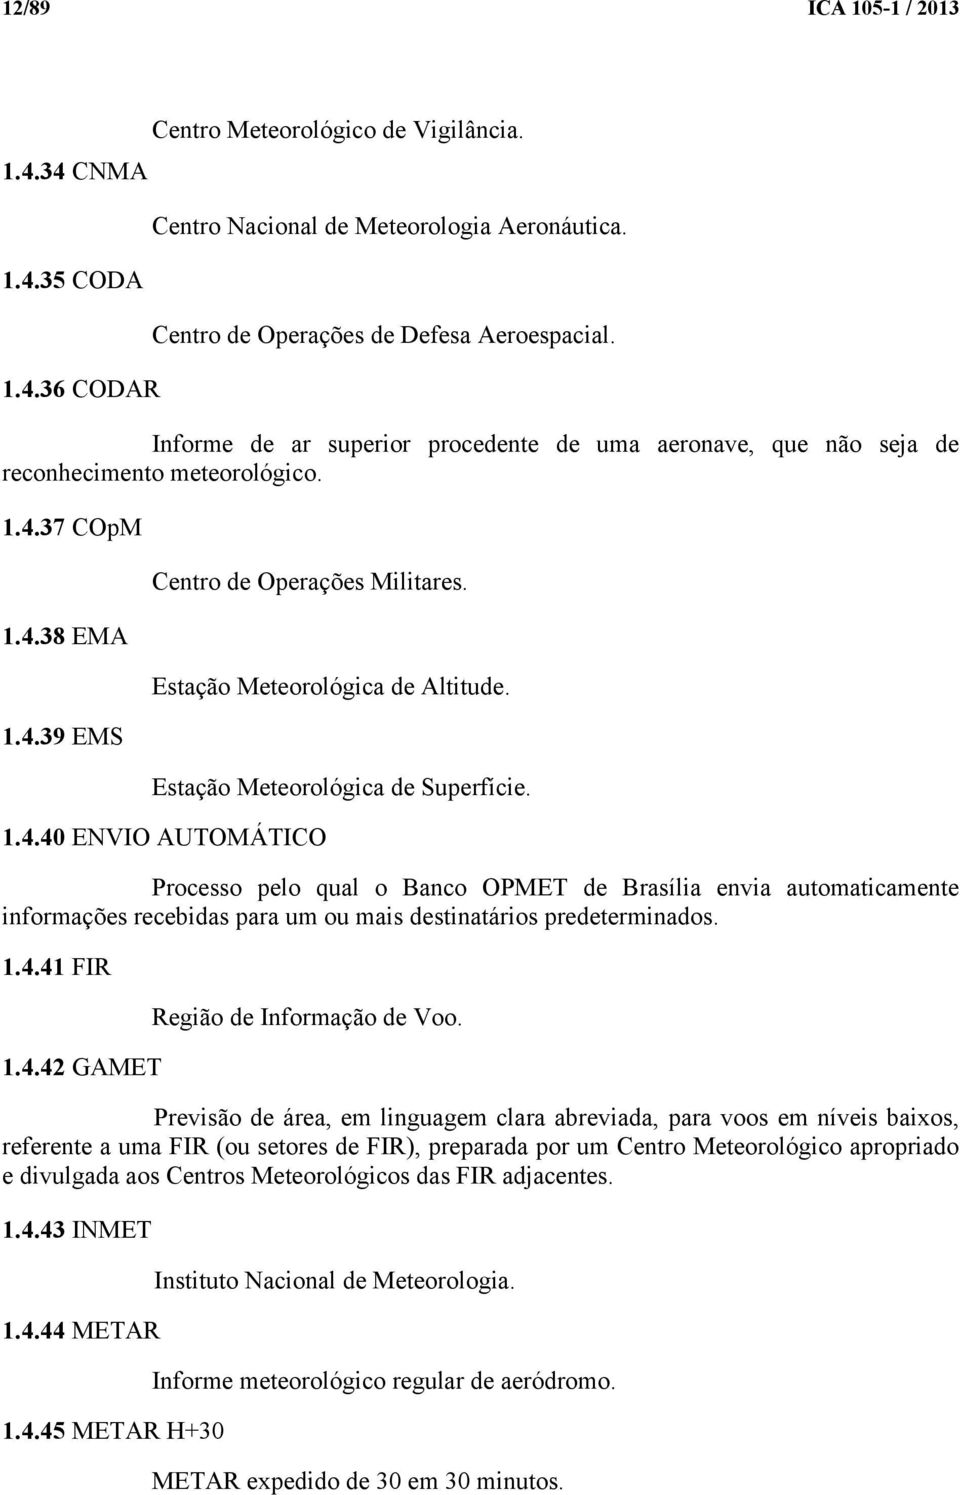 Estação Meteorológica de Superfície. 1.4.40 ENVIO AUTOMÁTICO Processo pelo qual o Banco OPMET de Brasília envia automaticamente informações recebidas para um ou mais destinatários predeterminados. 1.4.41 FIR 1.